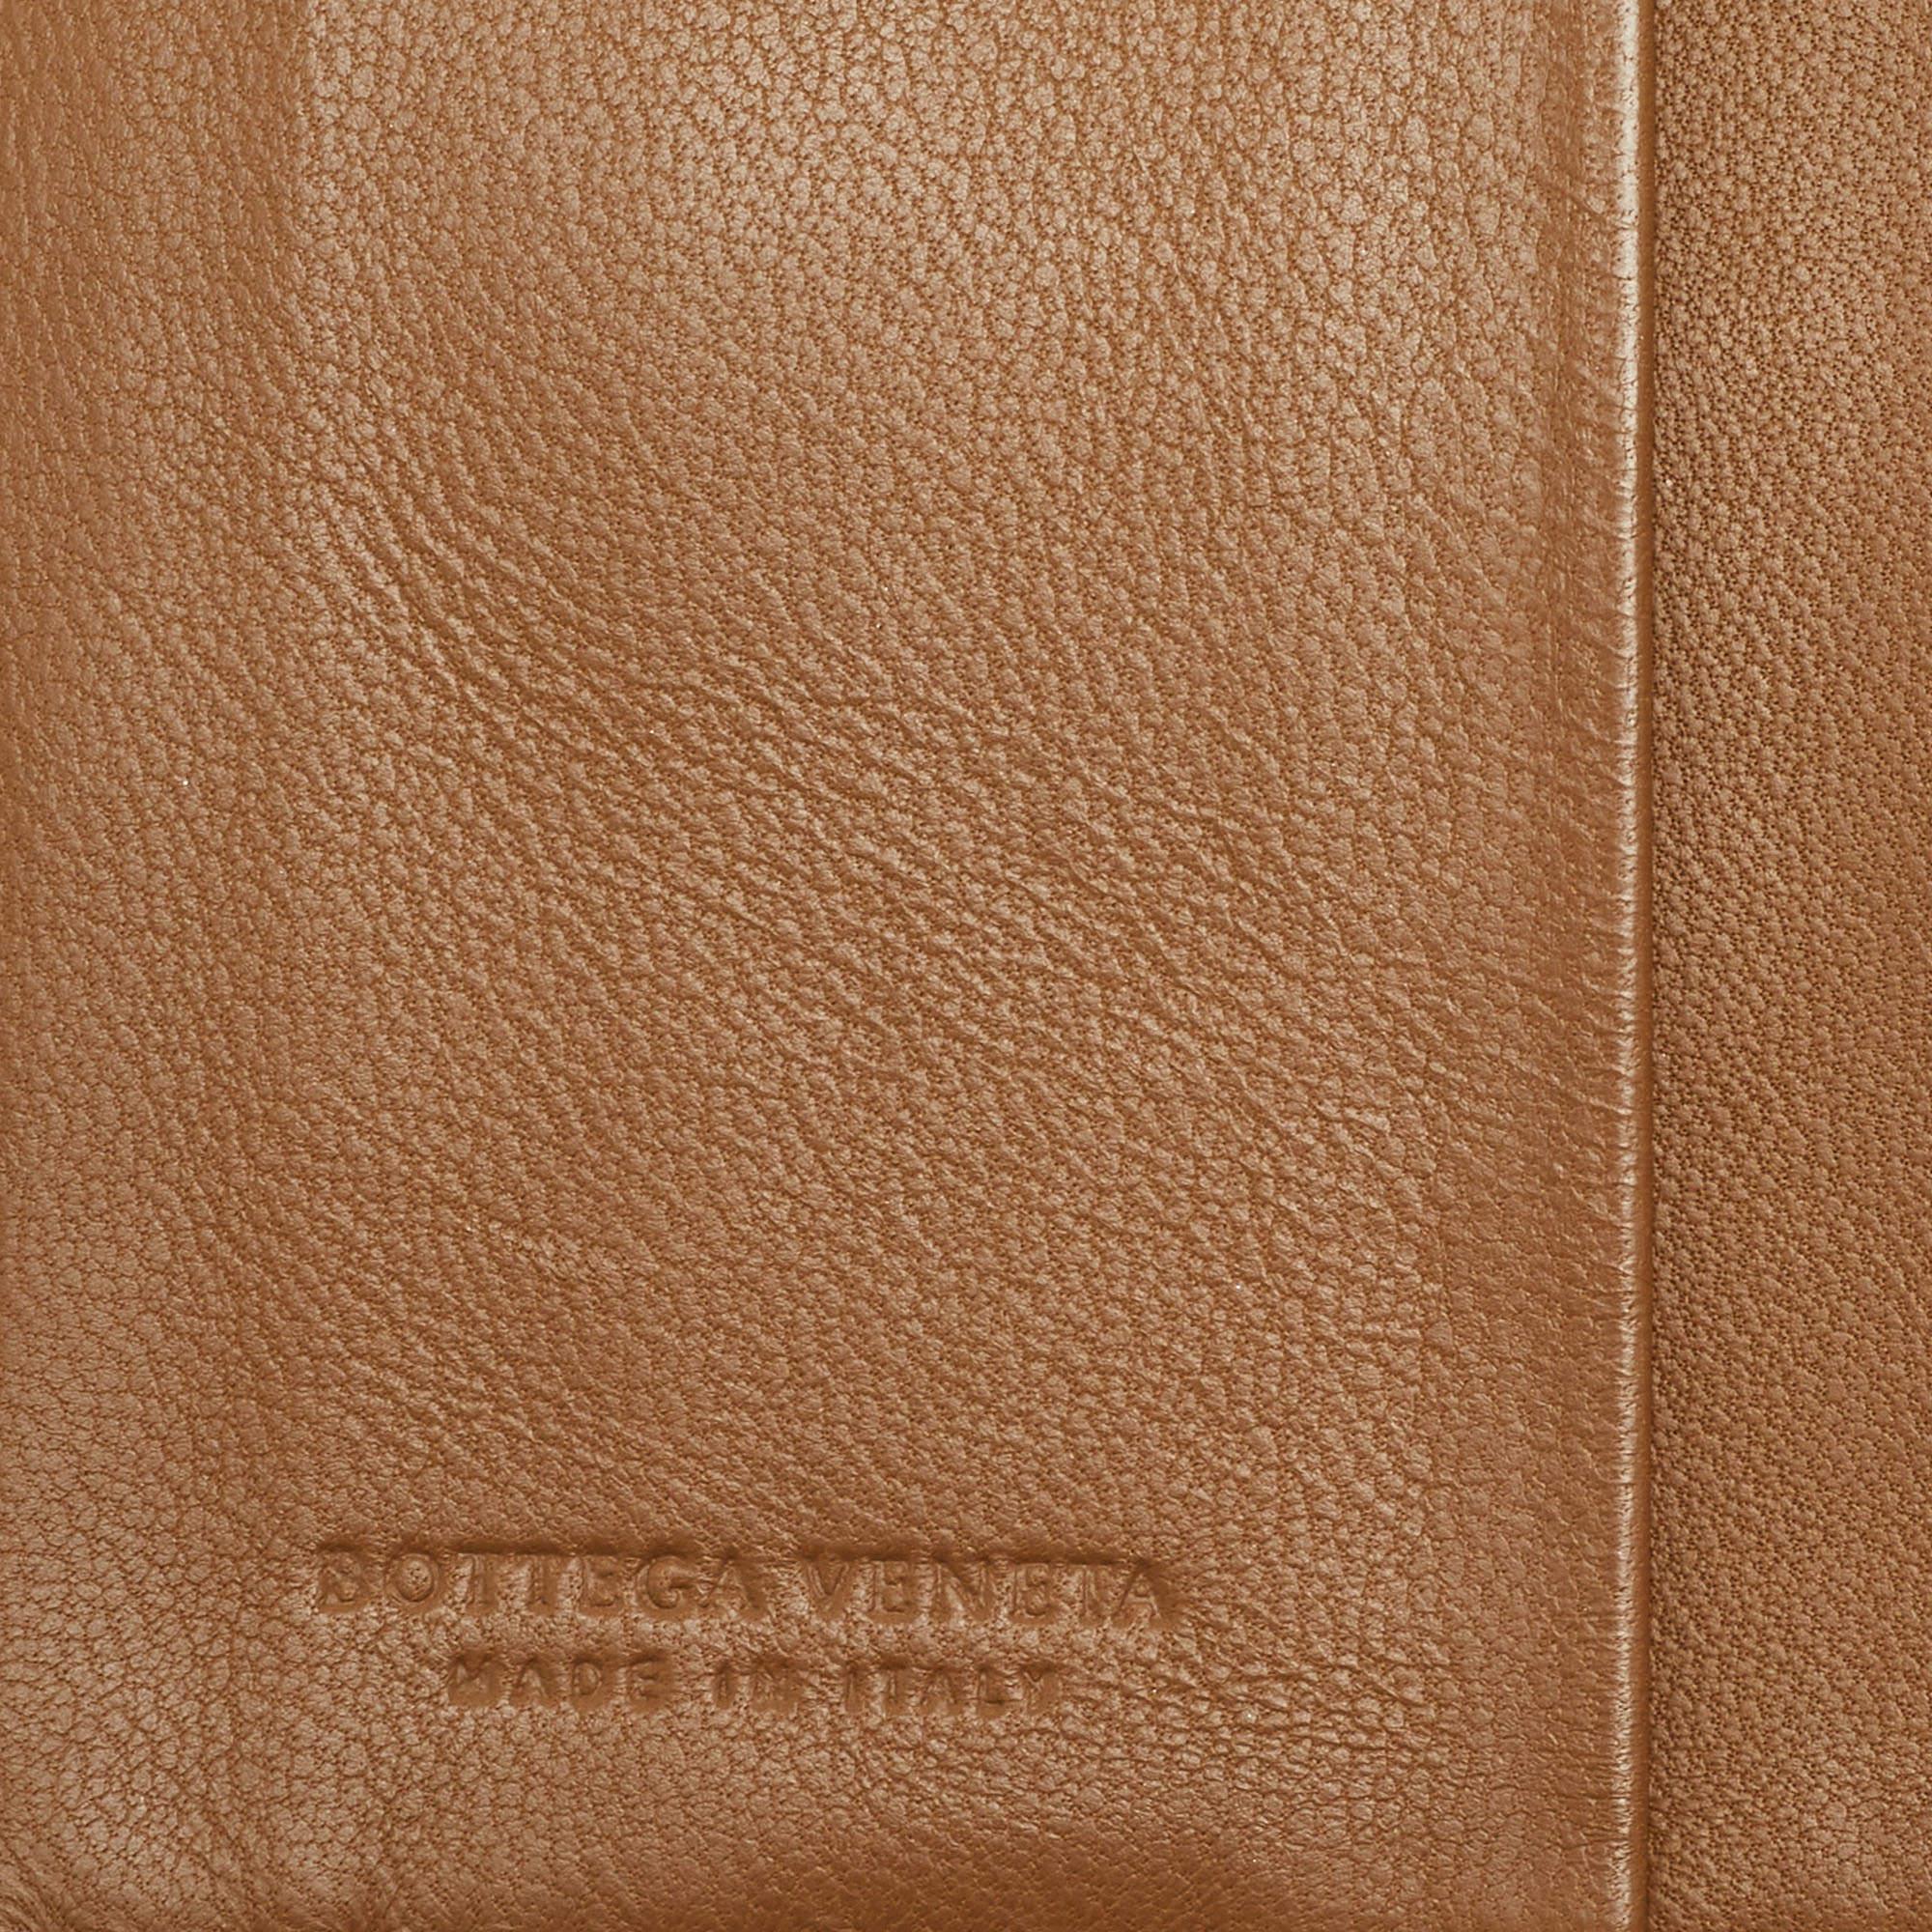 Bottega Veneta Brown Intrecciato Leather French Wallet 2